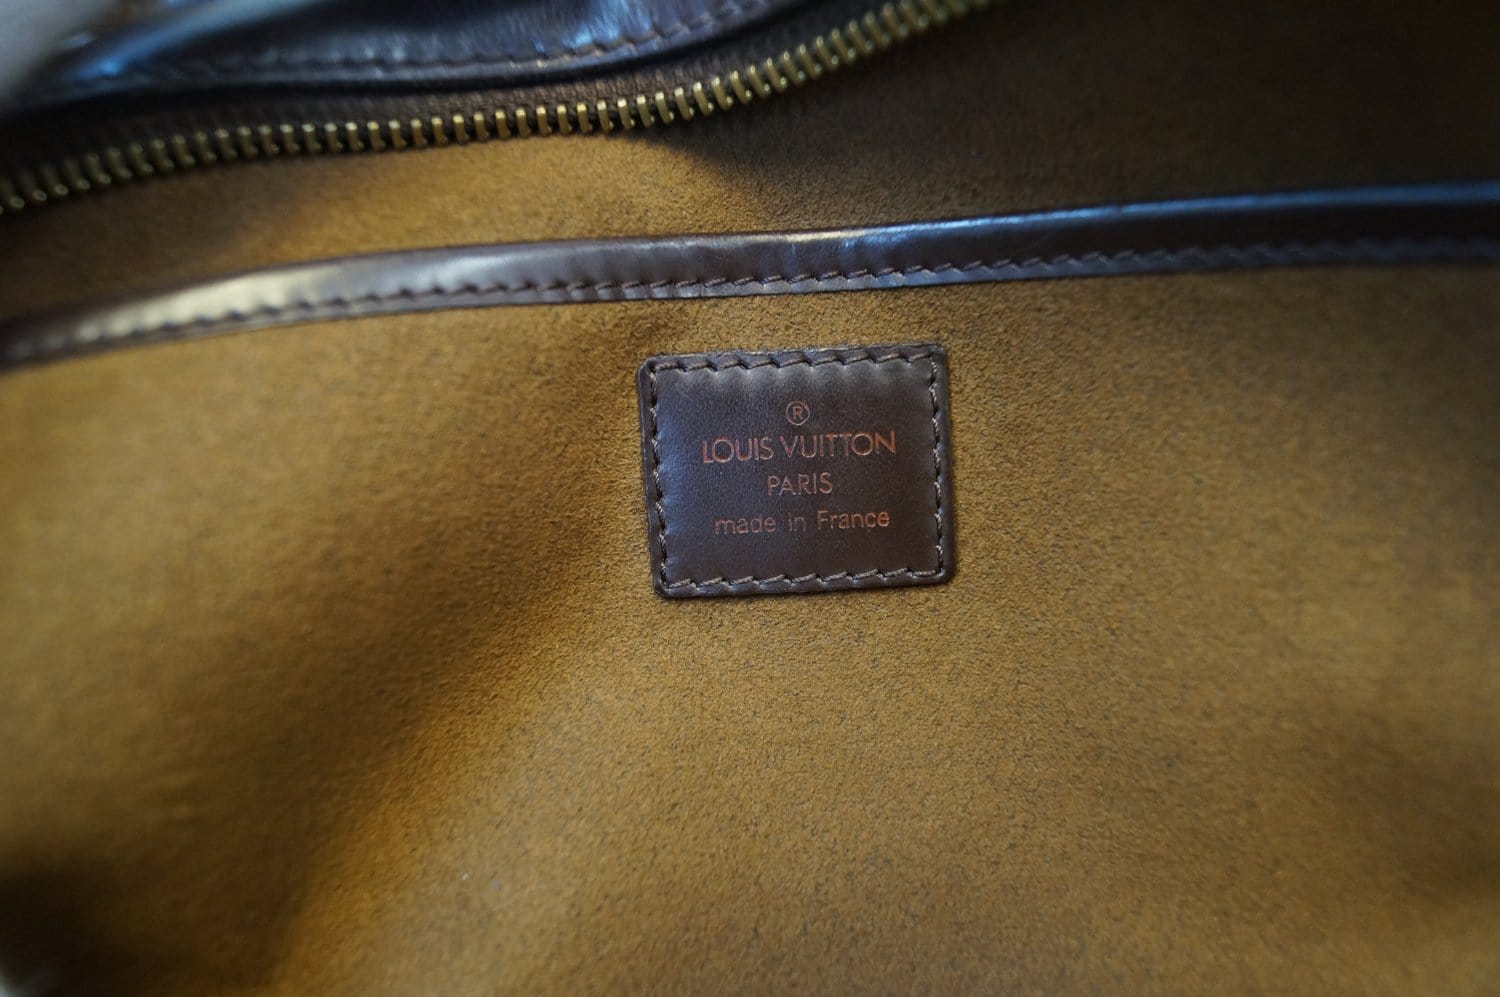 Louis Vuitton Saint Louis Damier Ebene Pochette Clutch Bag